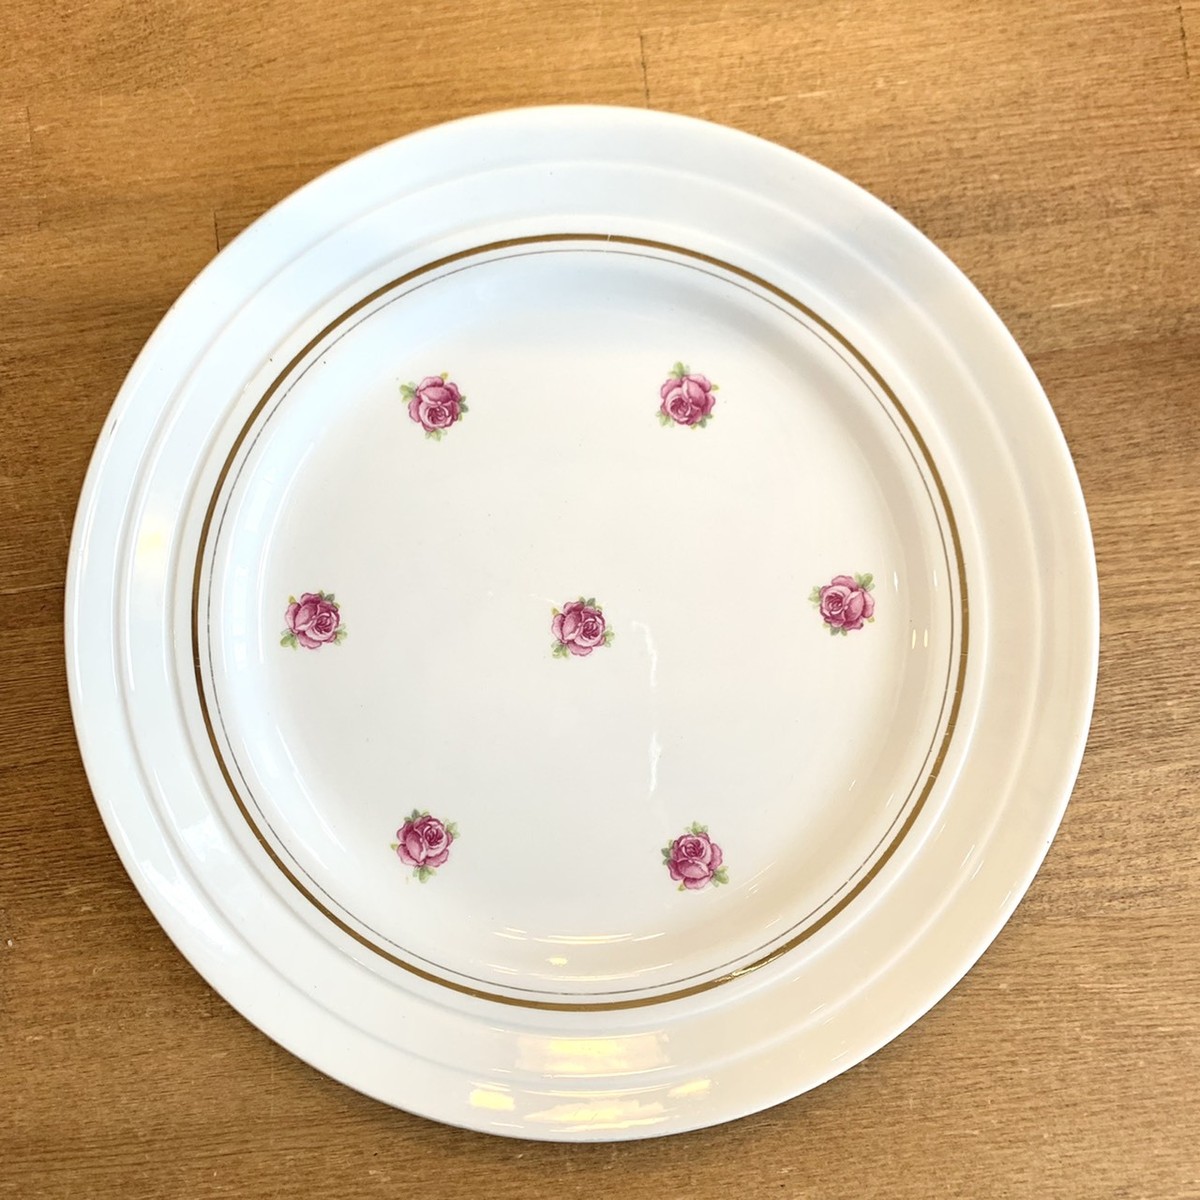 フランスアンティーク フランス食器 バラ 薔薇 プレート リモージュ 可愛い | 岡崎・幸田のアンティーク・アイアンショップ「森の鍛冶屋